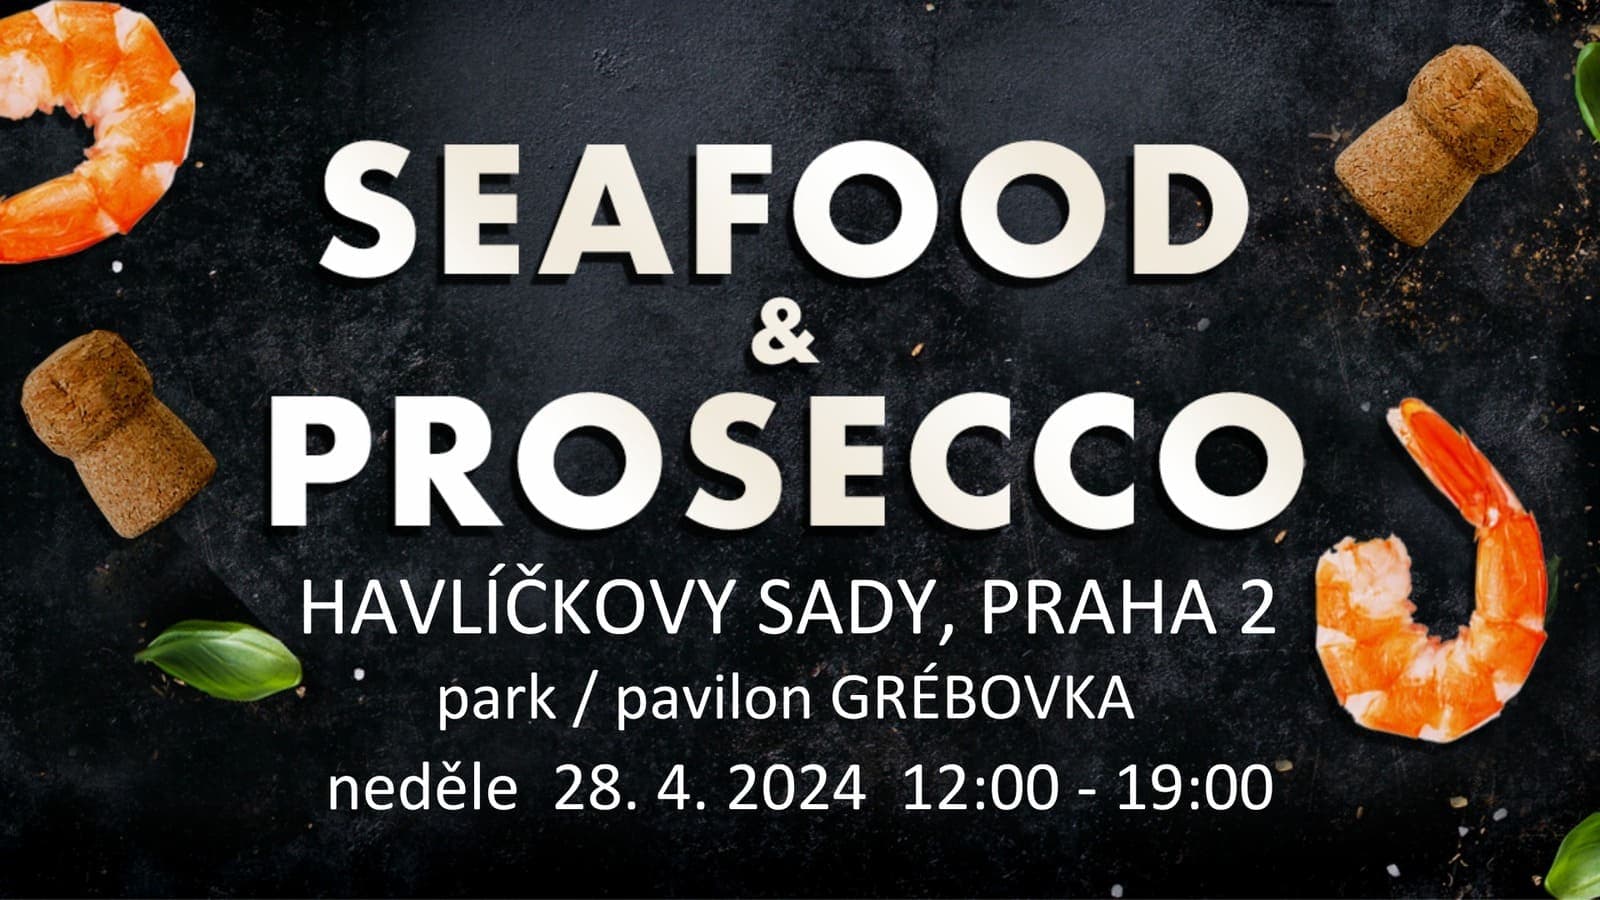 28 апреля в Праге пройдет фестиваль морепродуктов и просекко